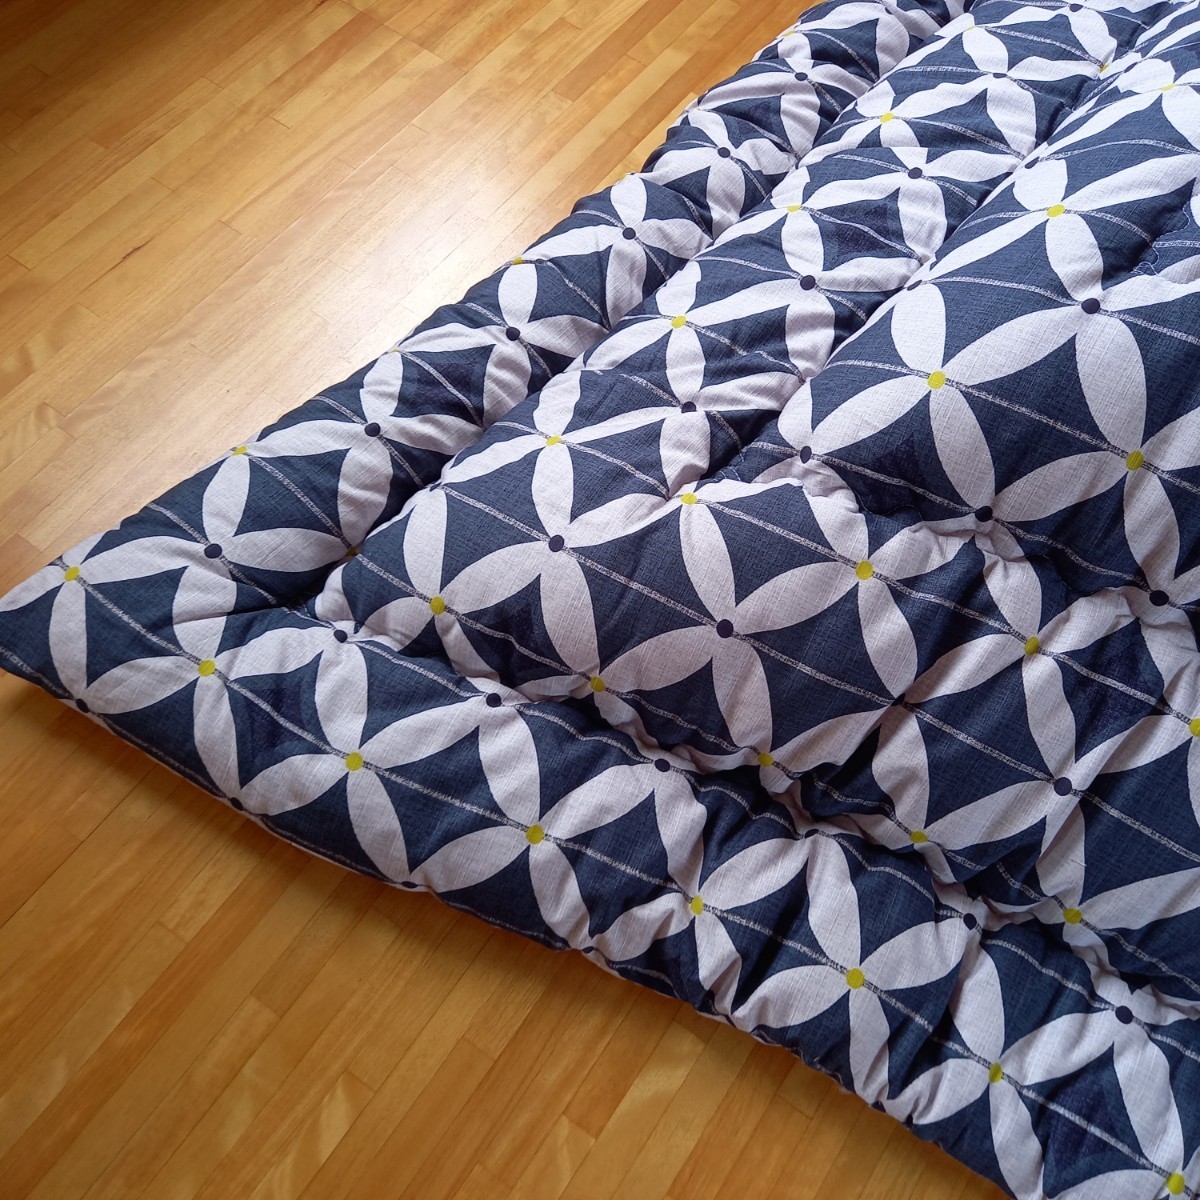 でおすすめアイテム。 変わり織 高級 長方形 枕)出品中です。 敷布団